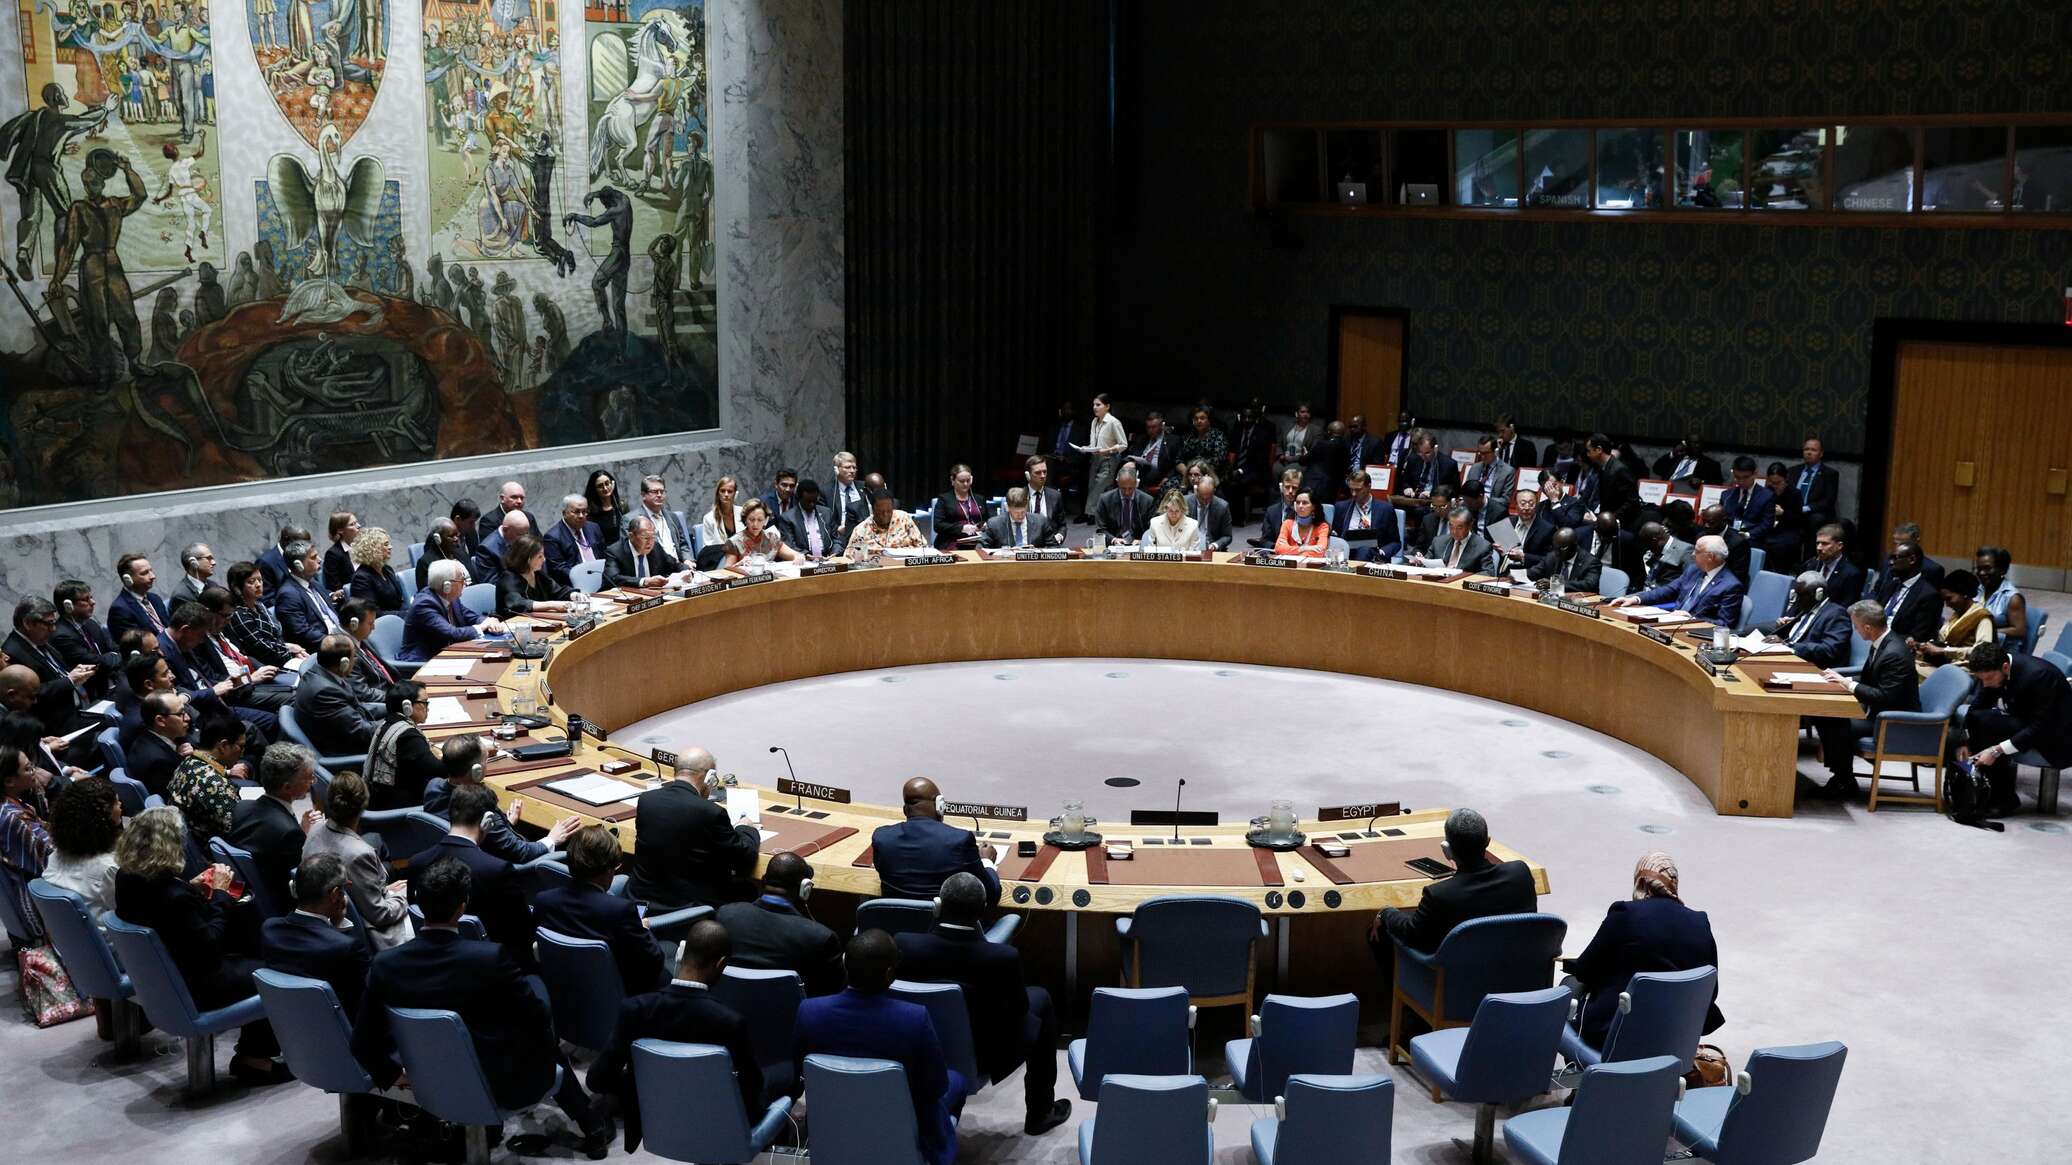 مجلس الأمن الدولي "يهتز من جذوره" لأسباب طبيعية... فيديو